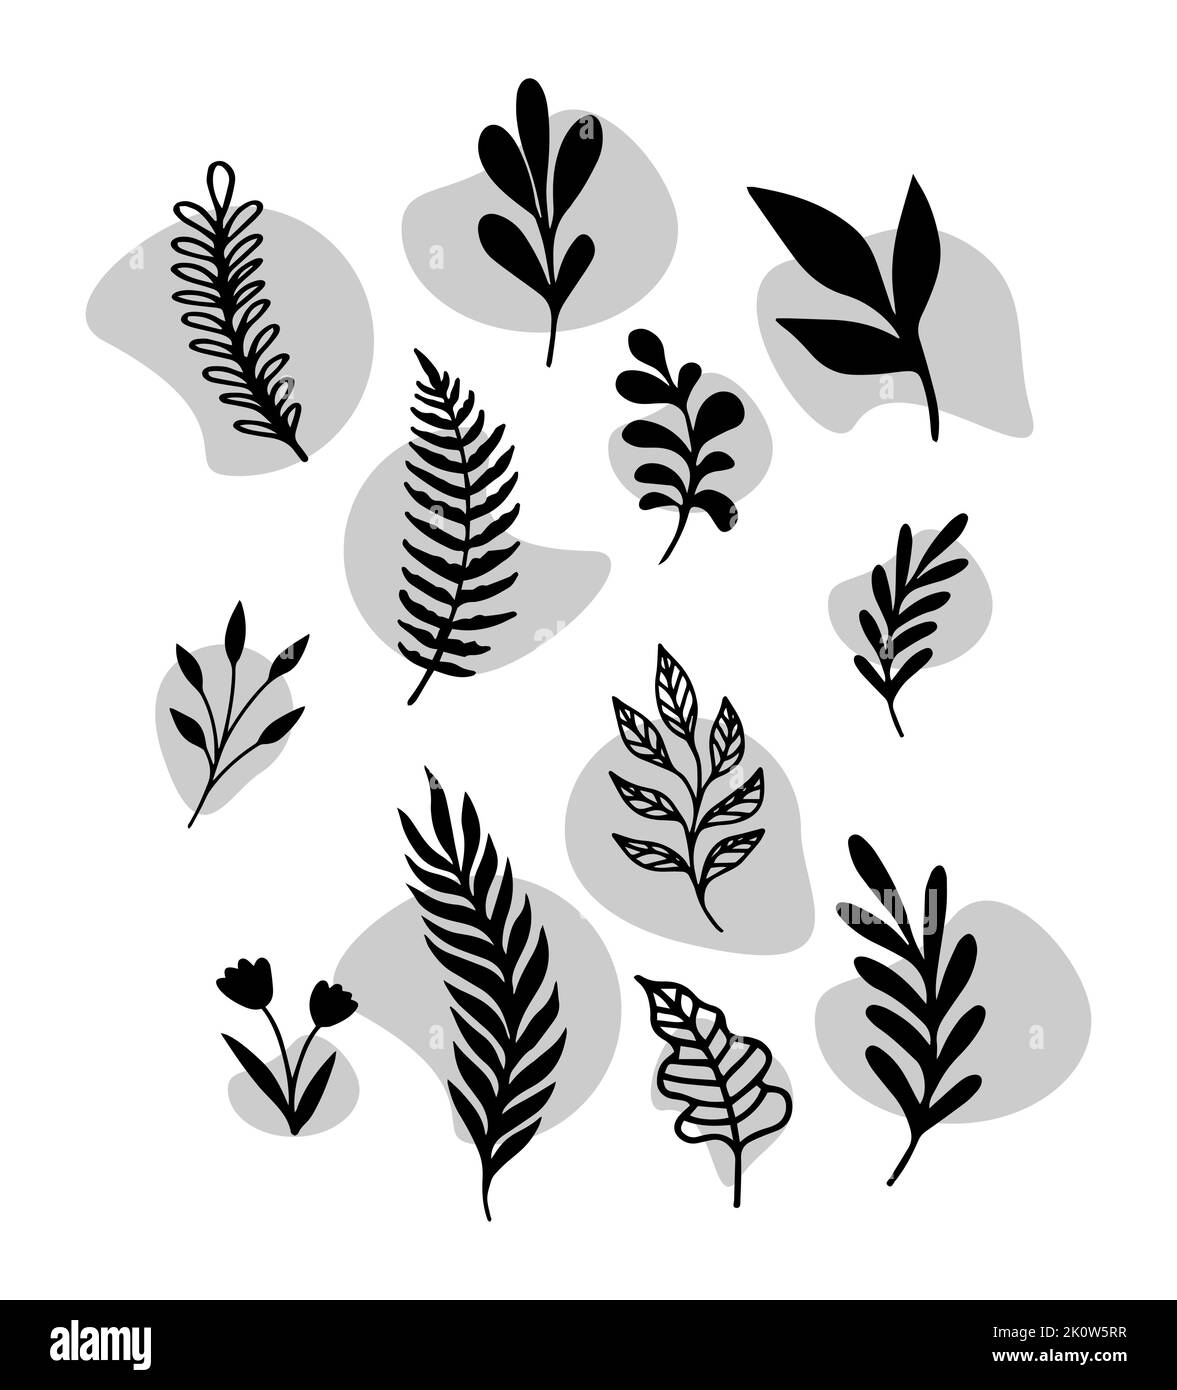 Metà secolo moderna Arte Botanica Contemporanea Poster Wall Art. Moderno Abstract foglie Foliage forme organiche. Vector Design per Social Media Print Illustrazione Vettoriale